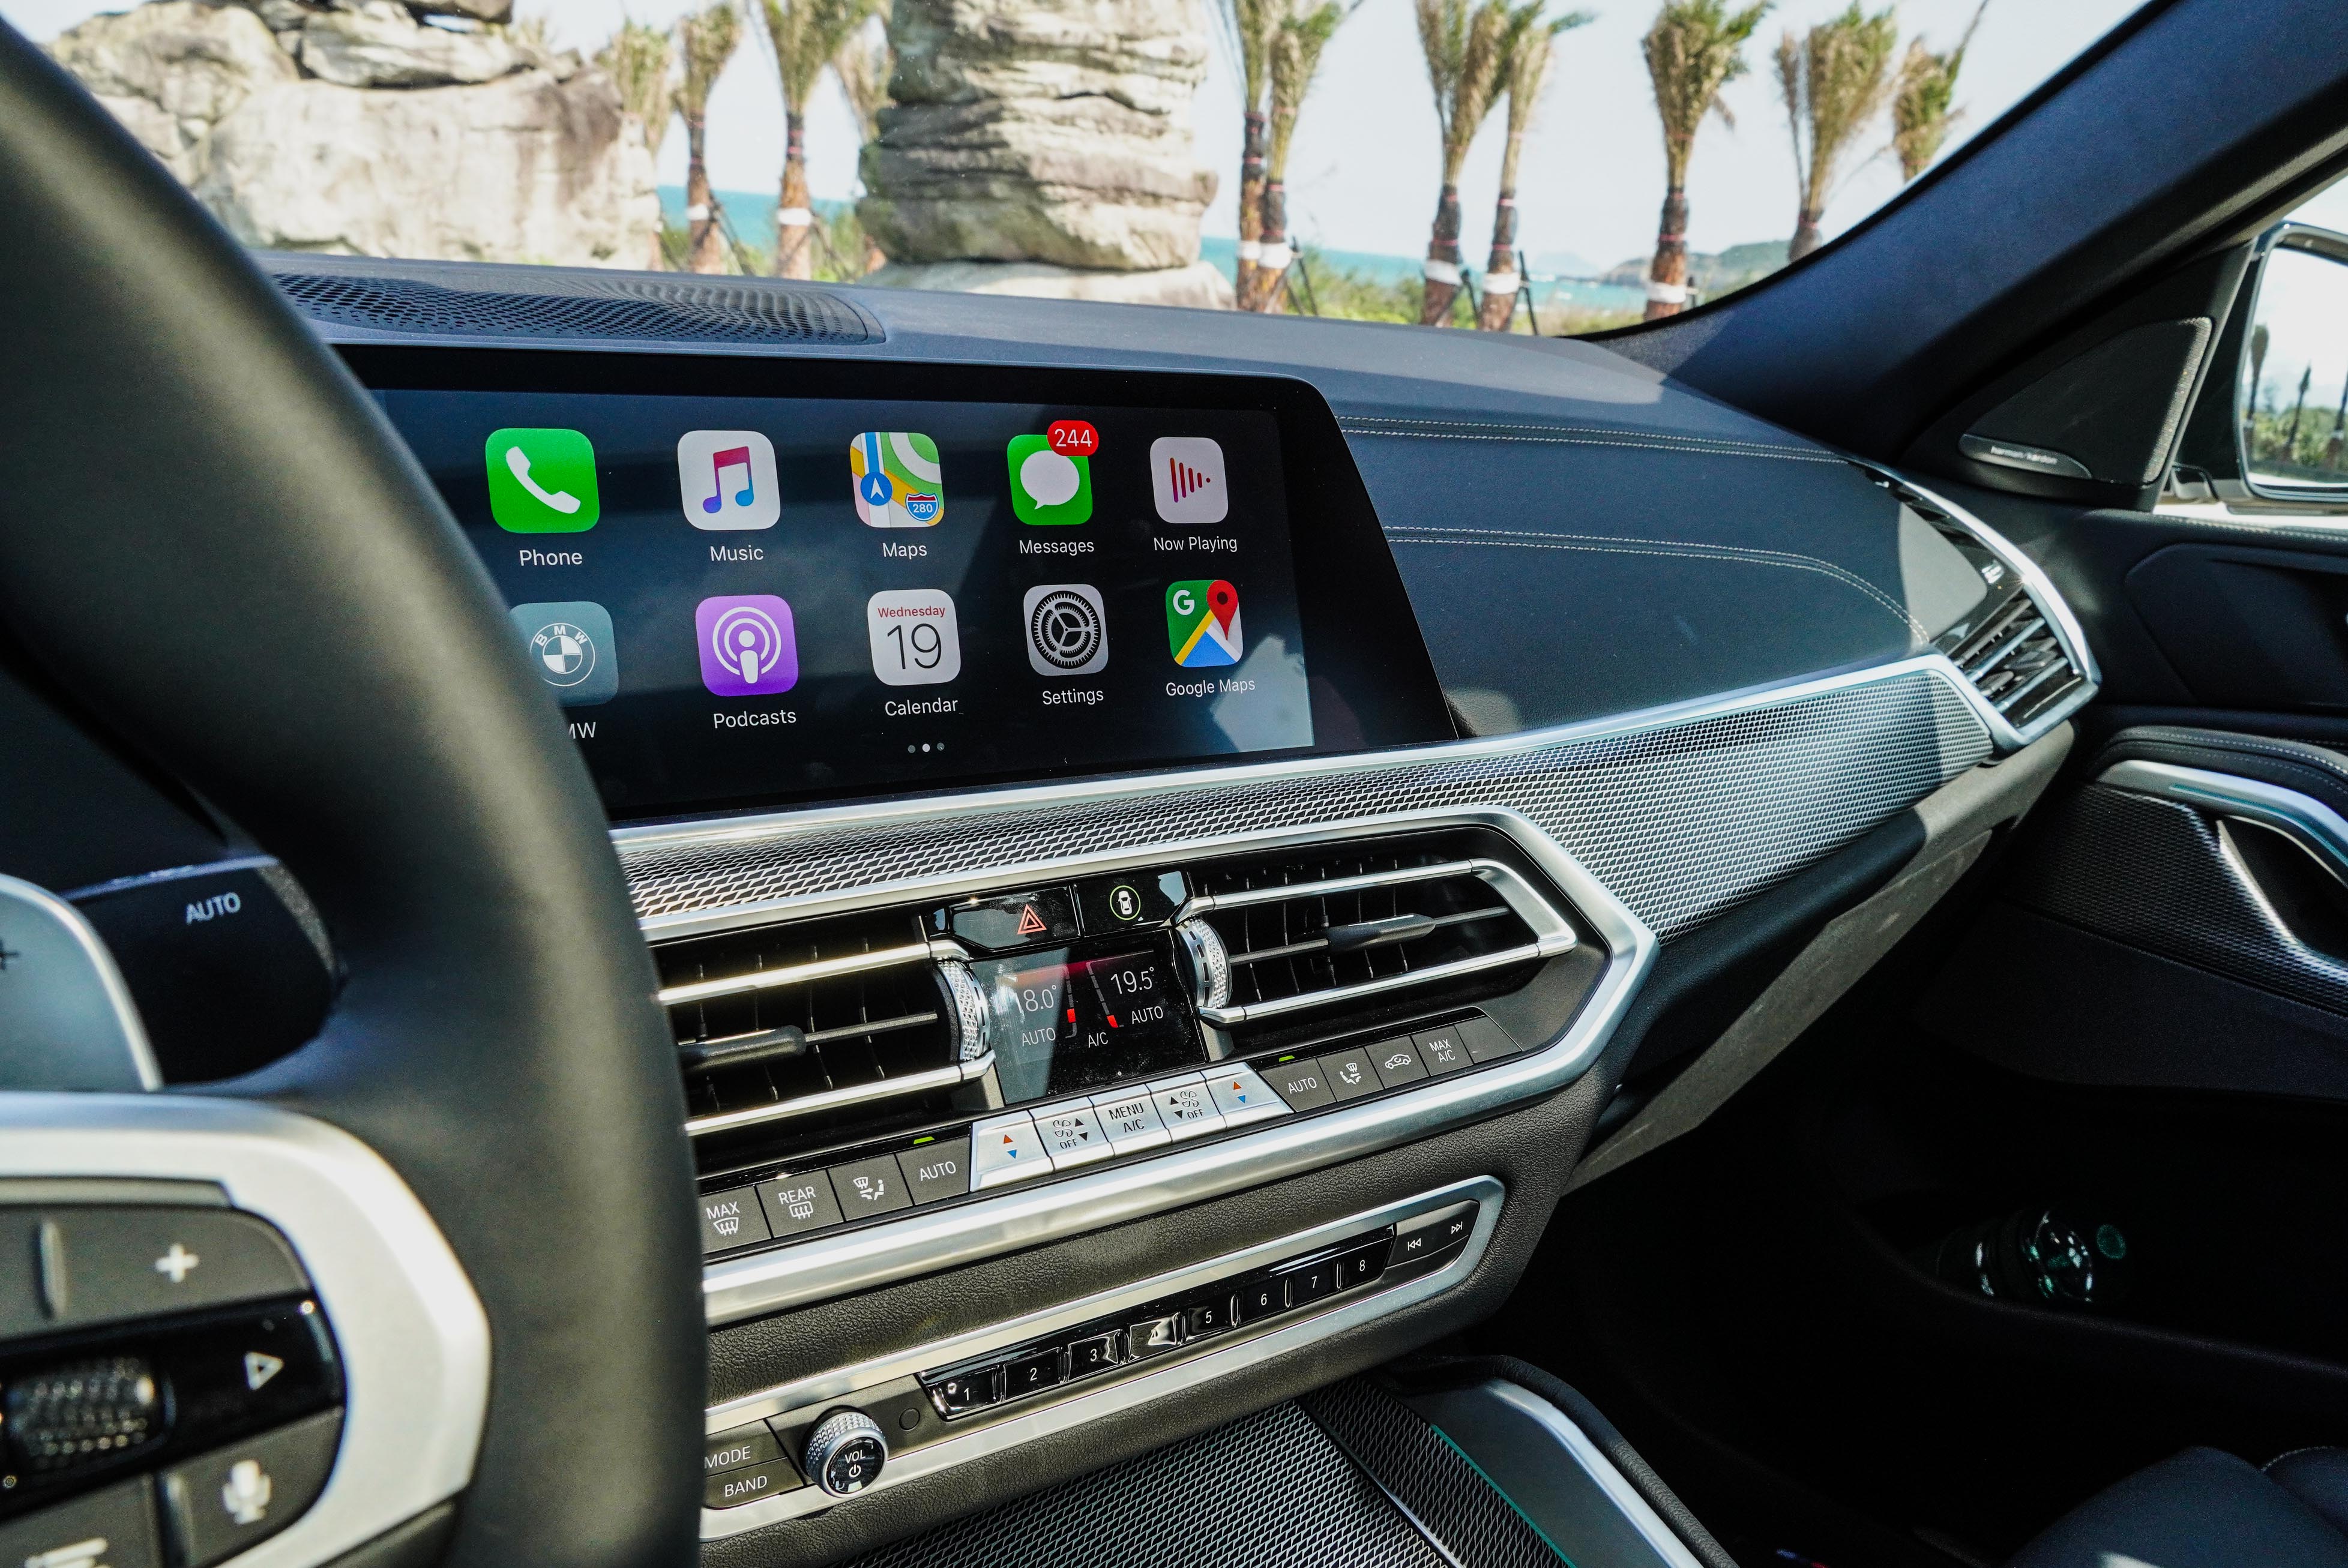 鋁質格紋飾板是 M Sport 以上版本專屬。無線 Apple CarPlay 功能為全車系標配，同步提供 BMW 智能衛星導航系統。